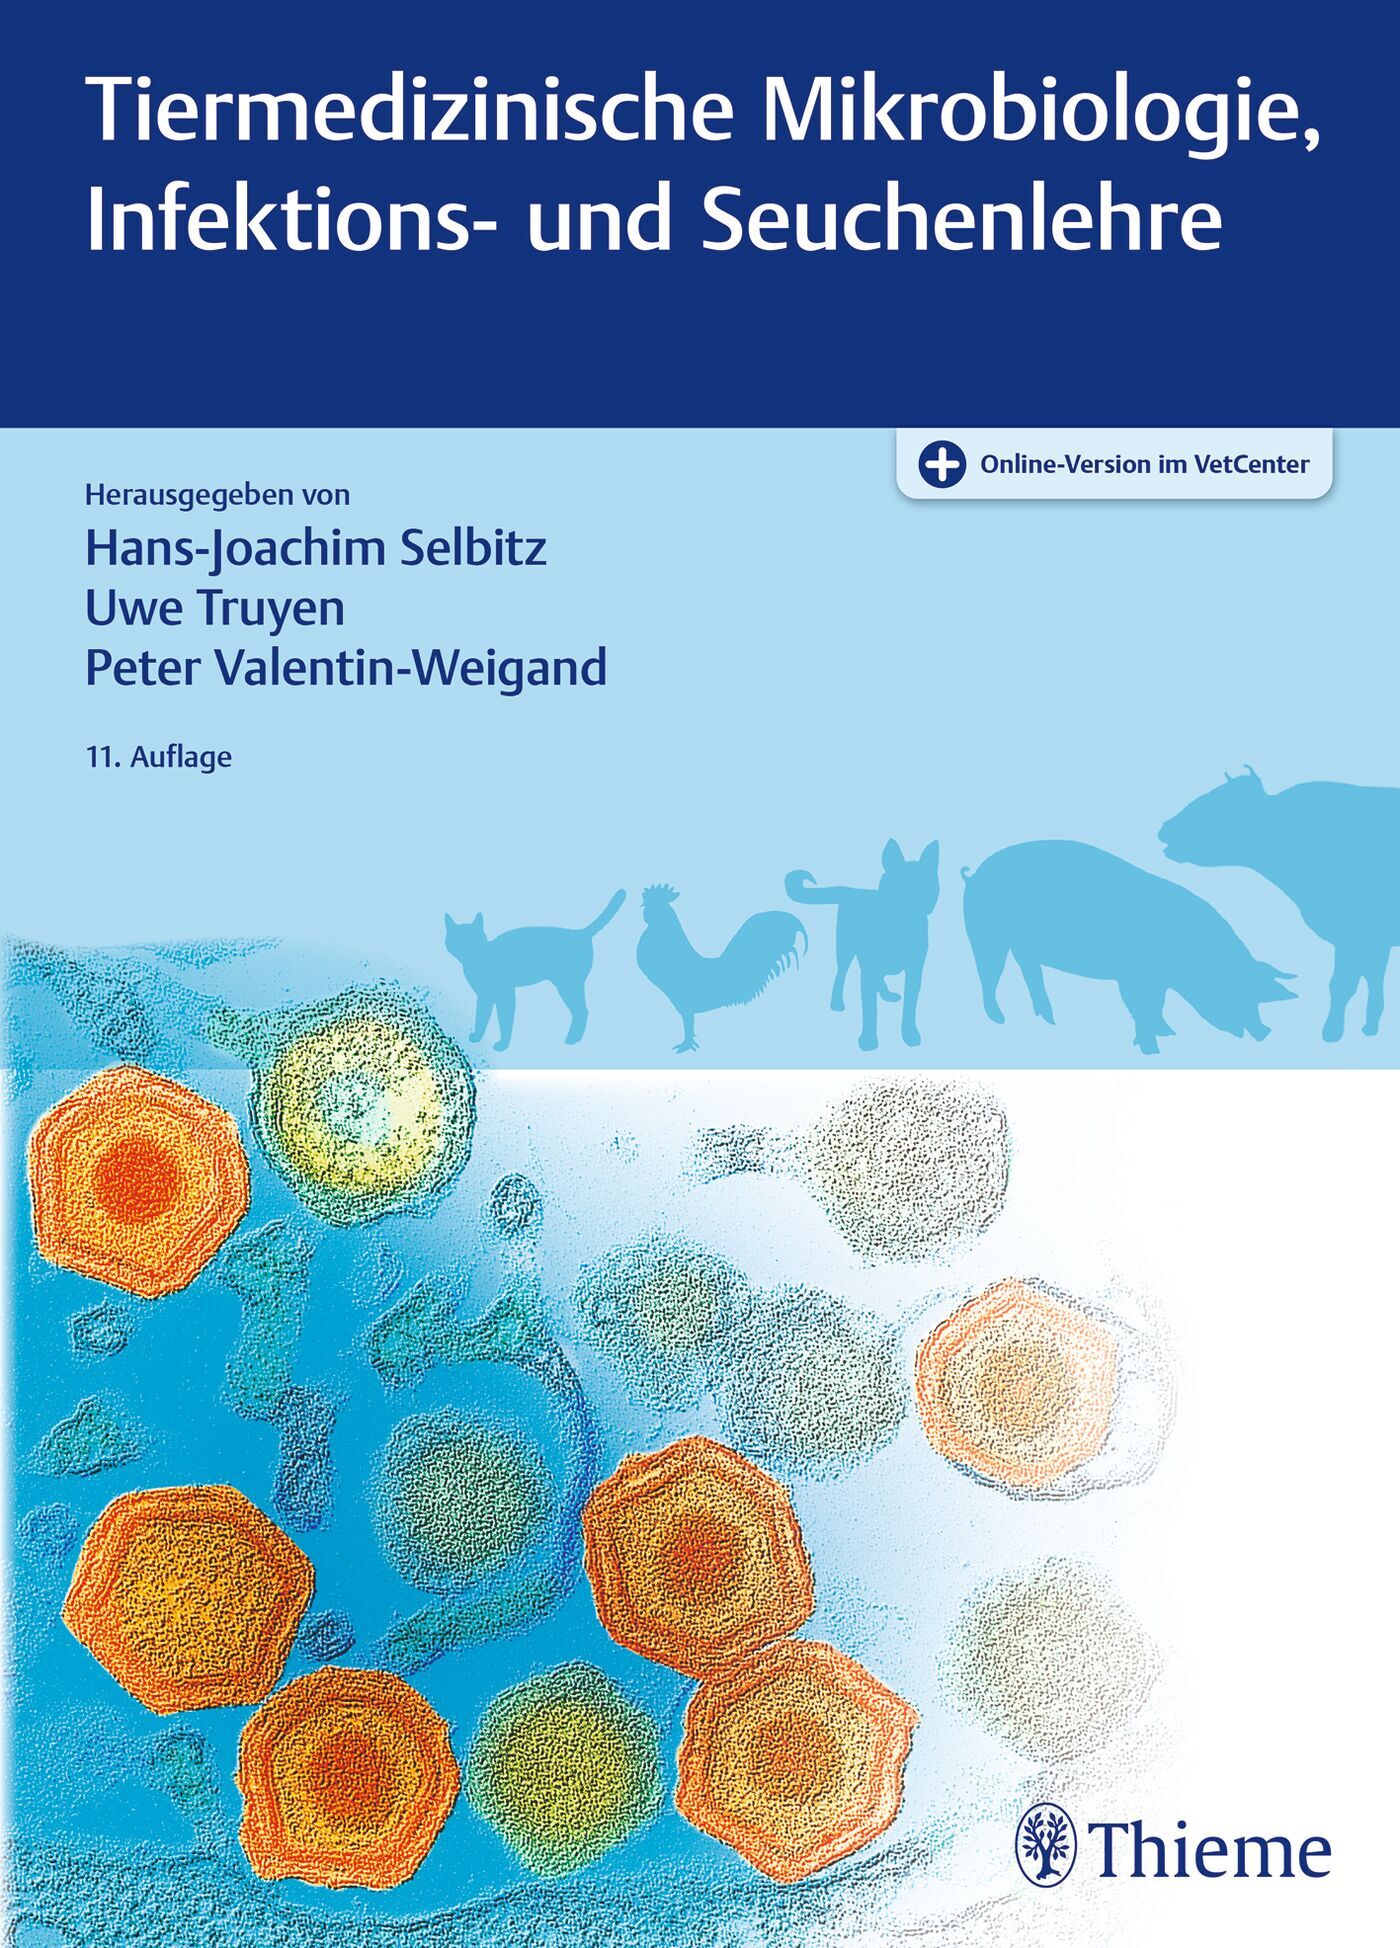 Tiermedizinische Mikrobiologie, Infektions- und Seuchenlehre, 9783132442535